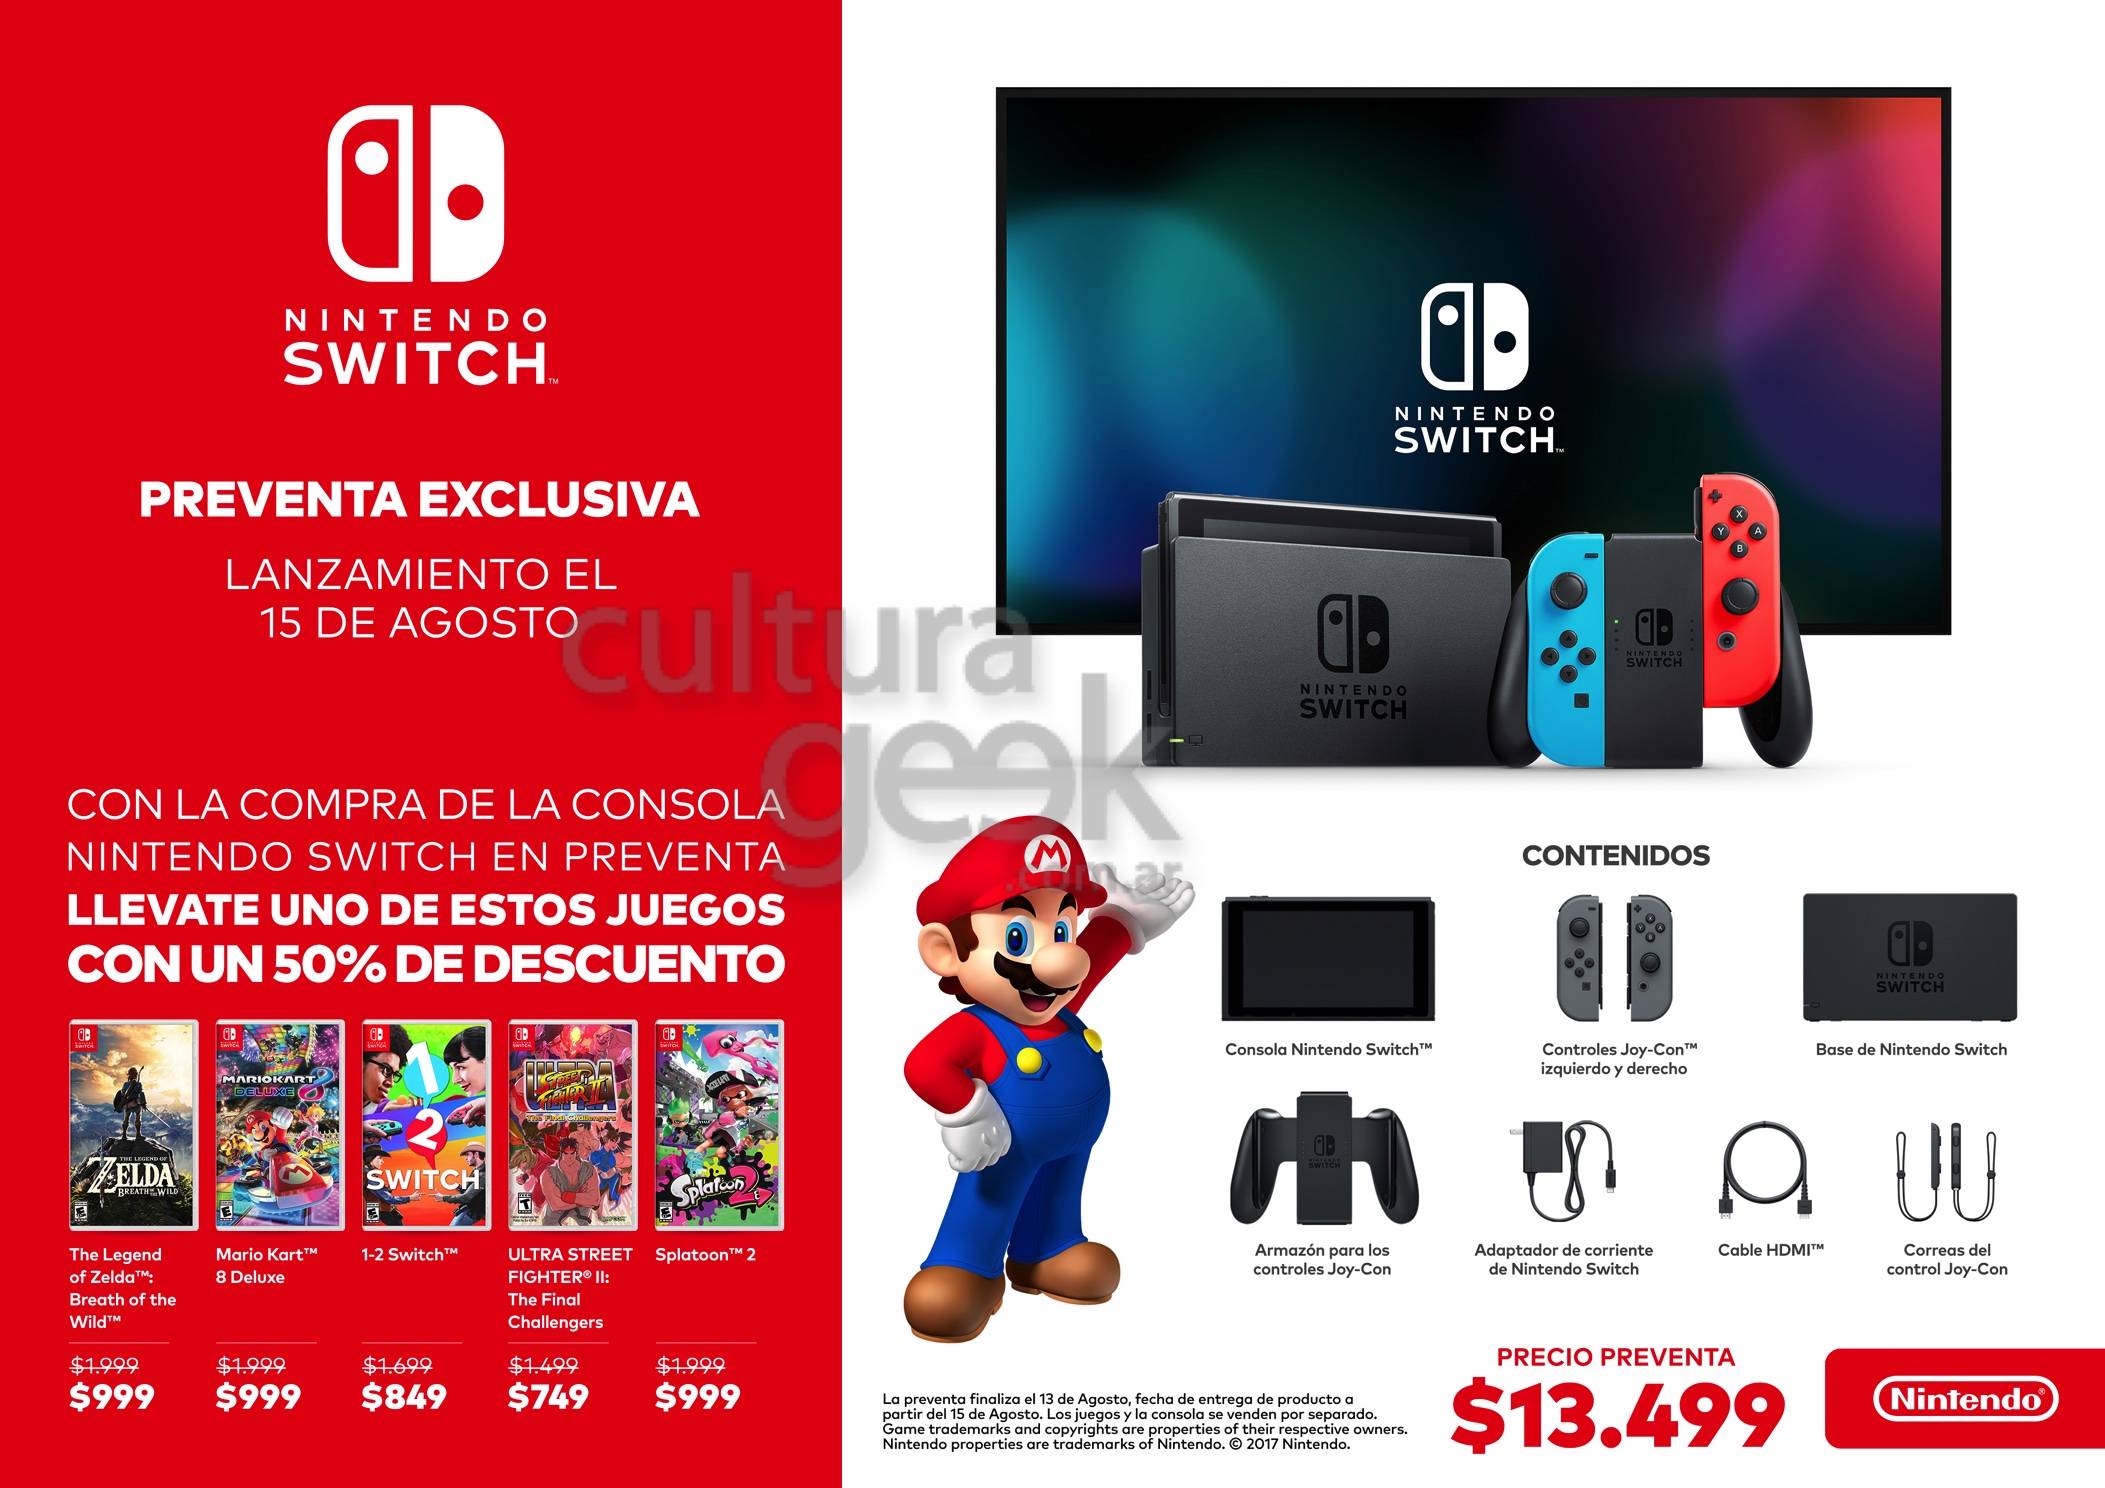 Nintendo Eshop llegará próximamente a Nintendo Switch en Argentina